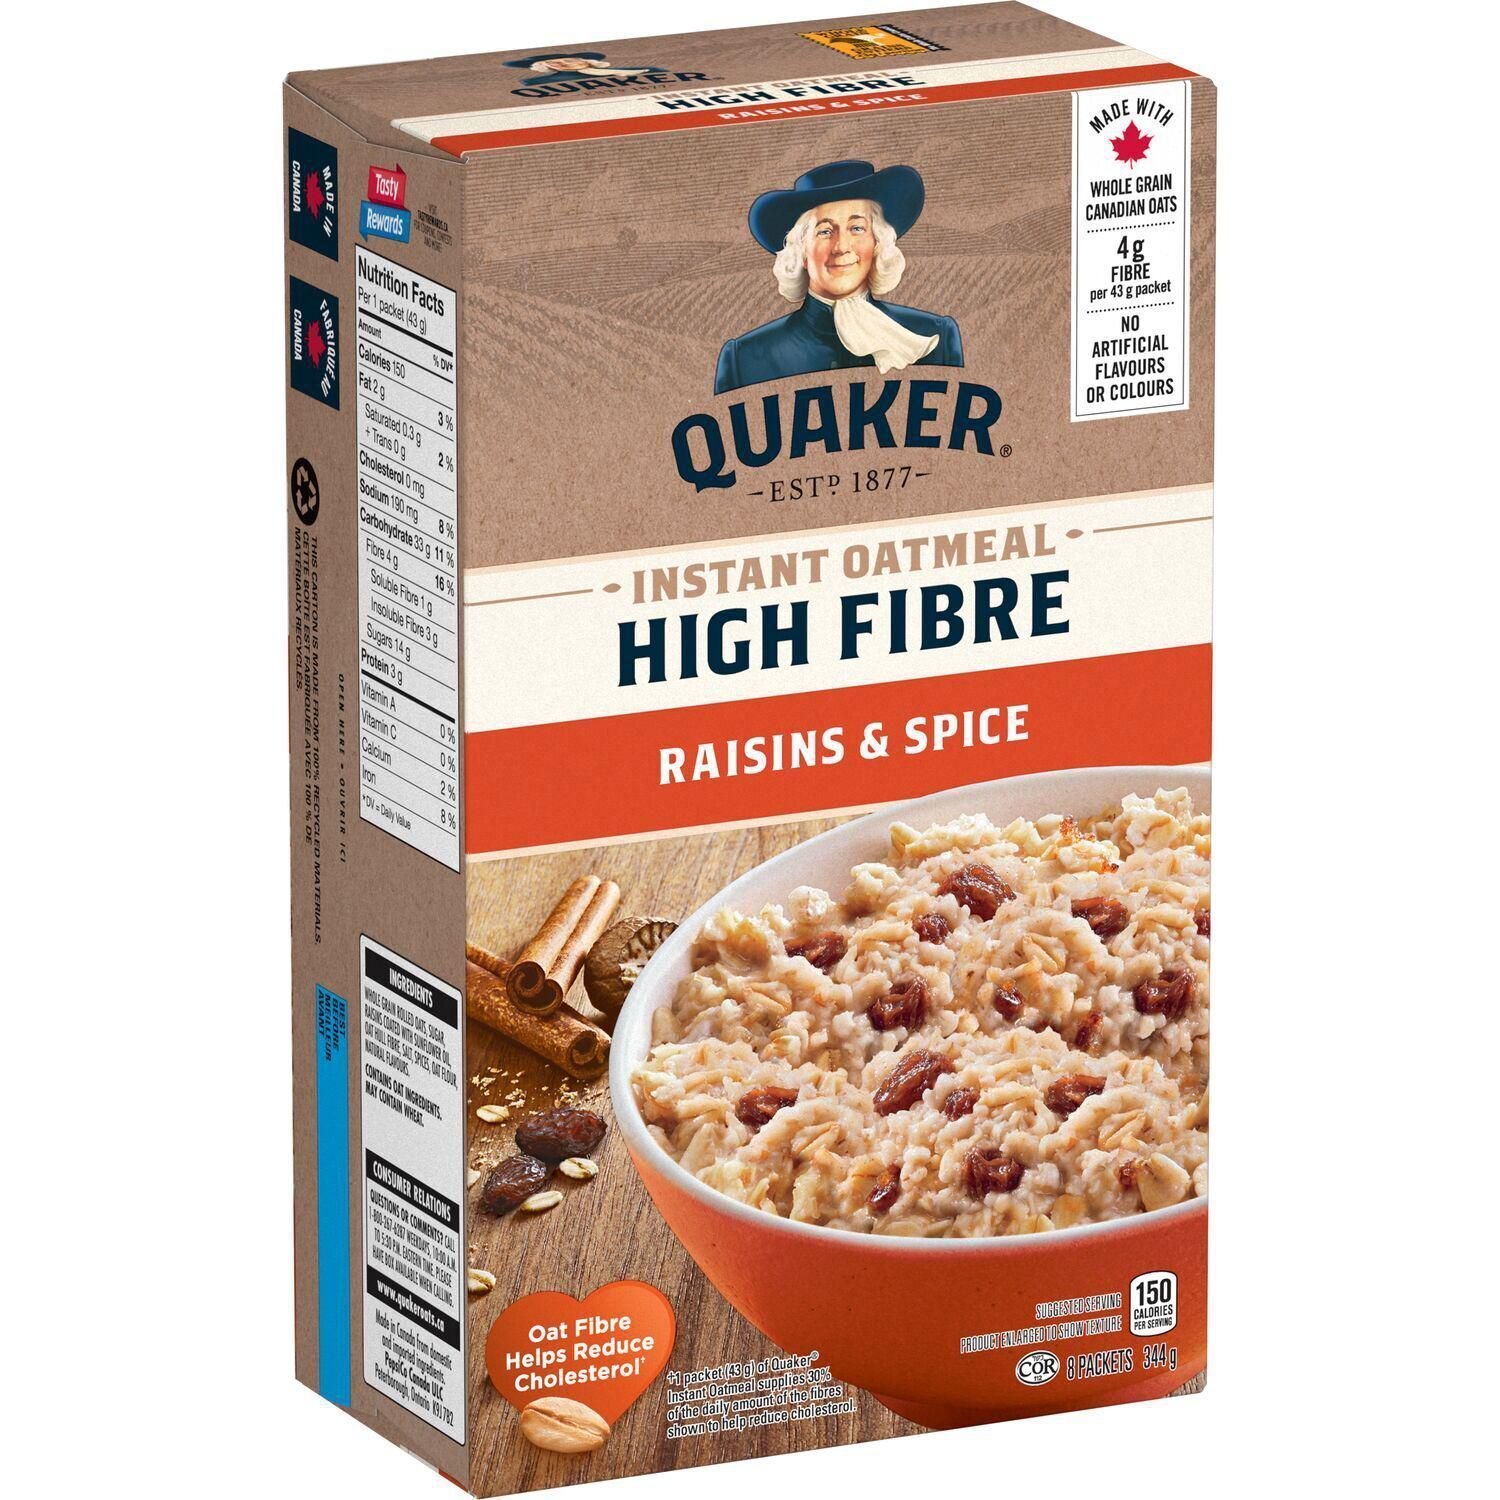 6 X Quaker High Fibre Raisins & Spice Instant Oatmeal 344g Each -8 packets/Box - $37.74